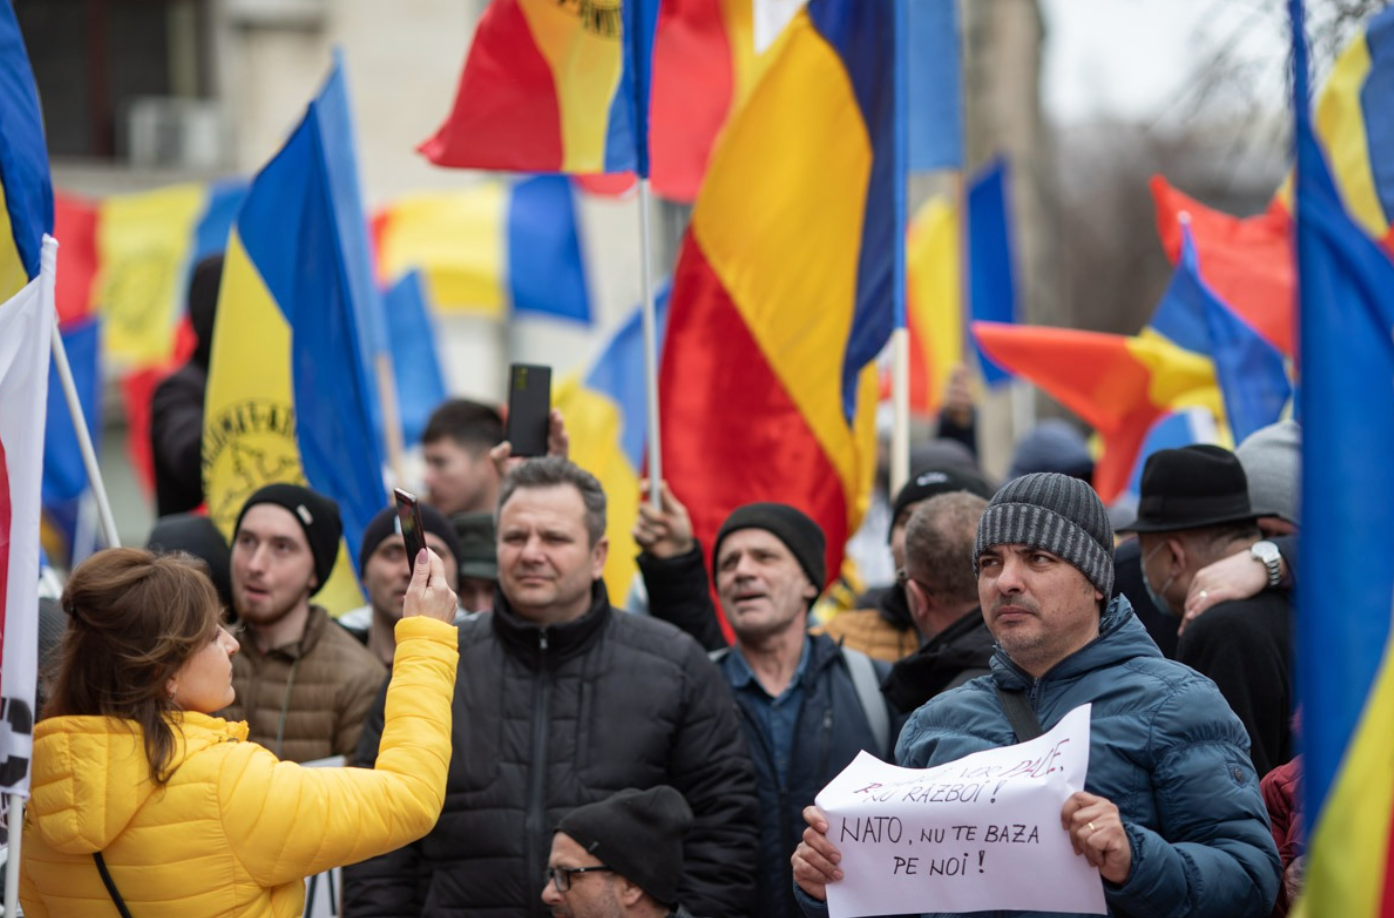 Militanți pro-Putin, la protestul AUR. ”Ce caută neo-naziștii ăia în Ucraina? NATO, nu conta pe noi”